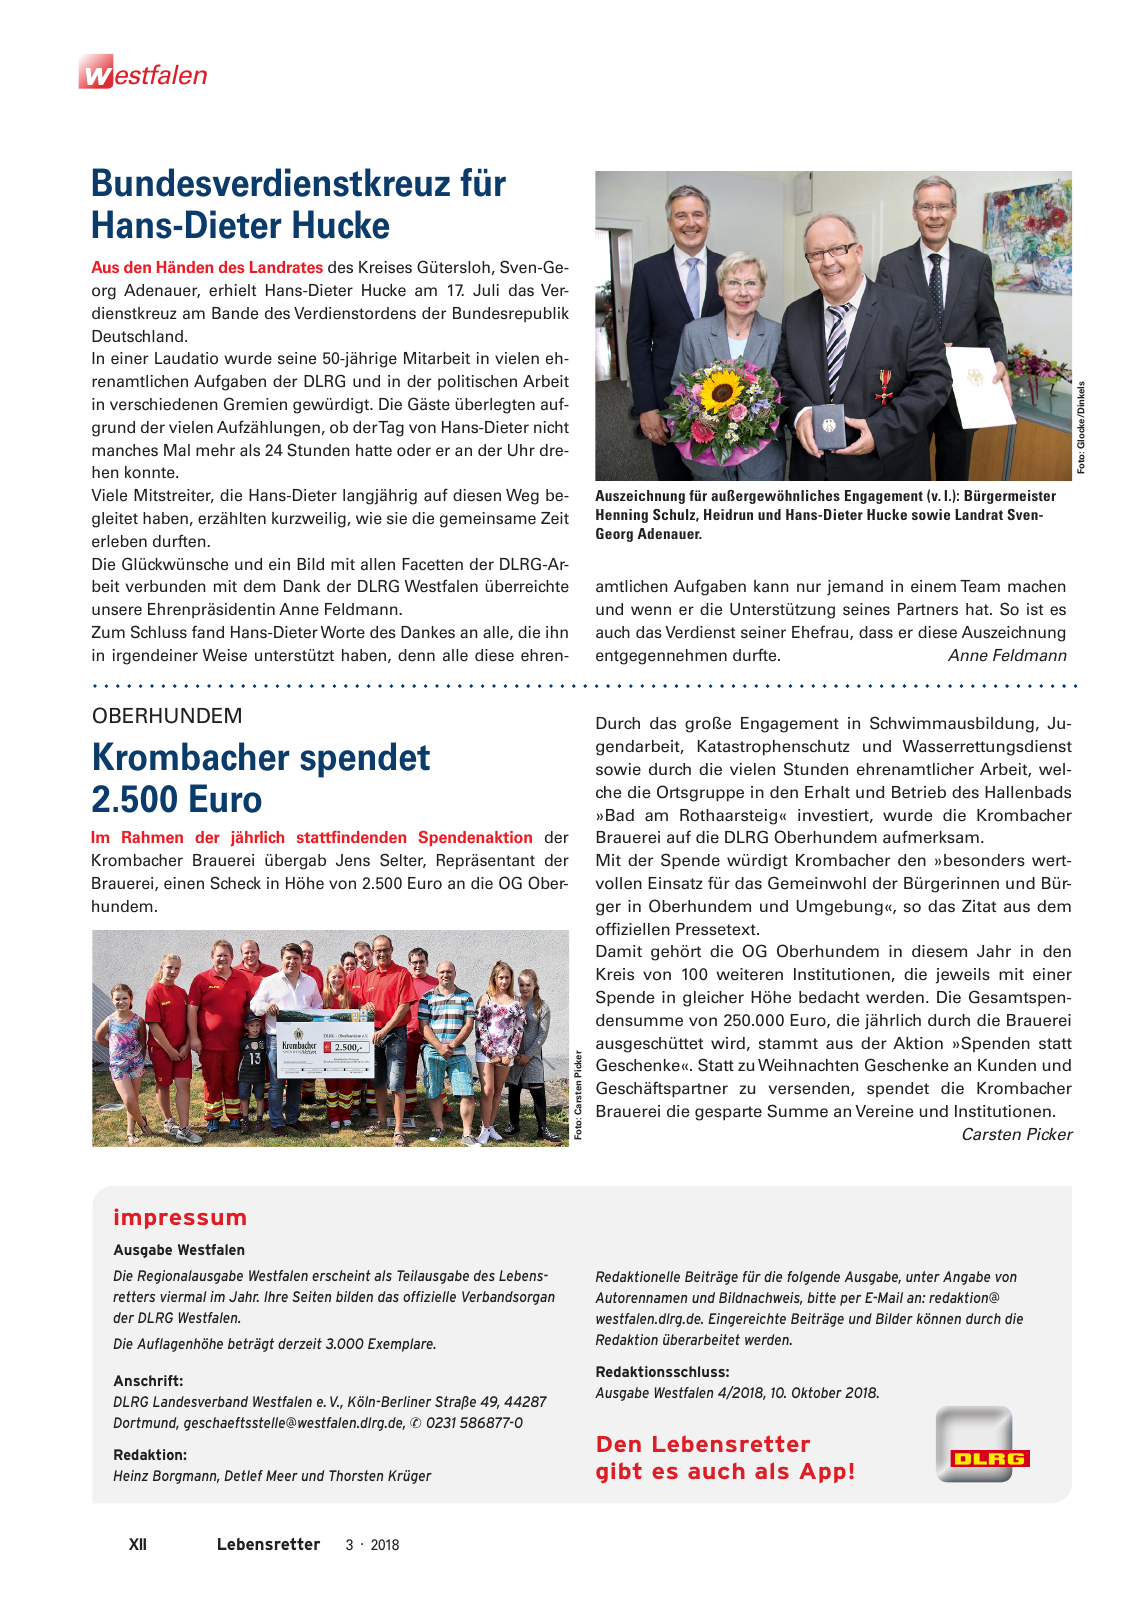 Vorschau Lebensretter 3/2018 - Regionalausgabe Westfalen Seite 14